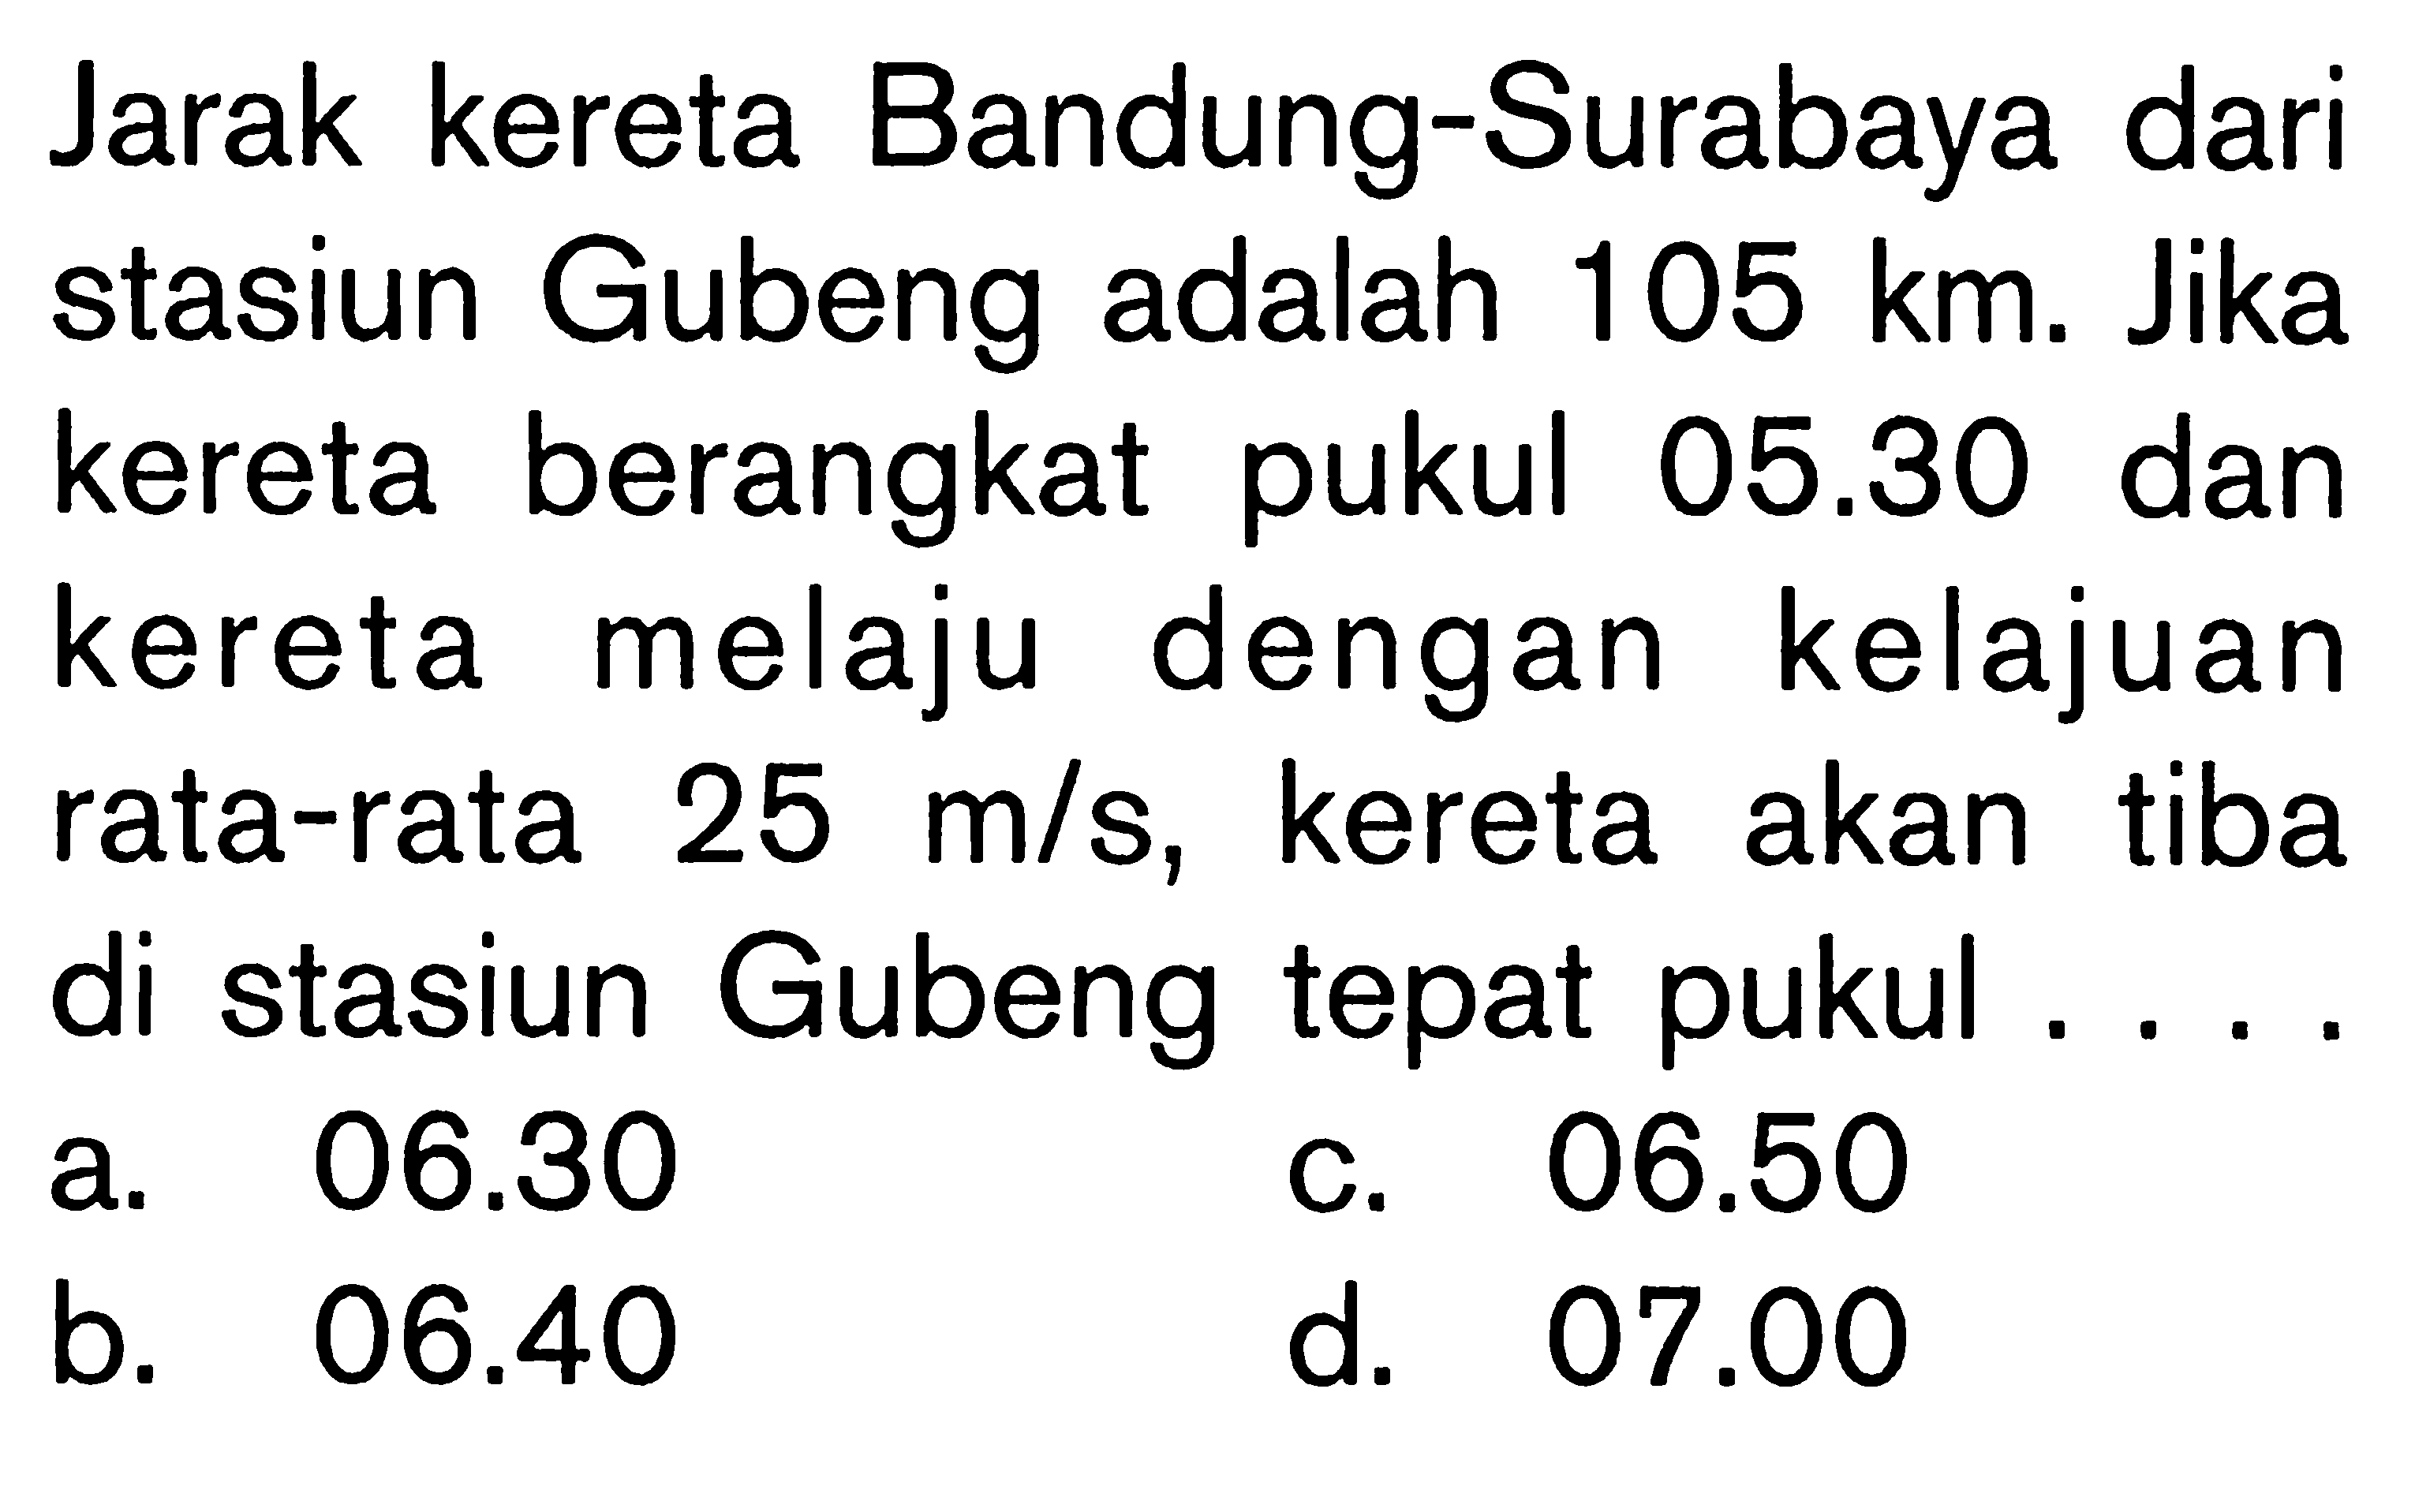 Jarak kereta Bandung-Surabaya dari stasiun Gubeng adalah 105 km. Jika kereta berangkat pukul 05.30 dan kereta melaju dengan kelajuan rata-rata 25 m/s, kereta akan tiba di stasiun Gubeng tepat pukul ....